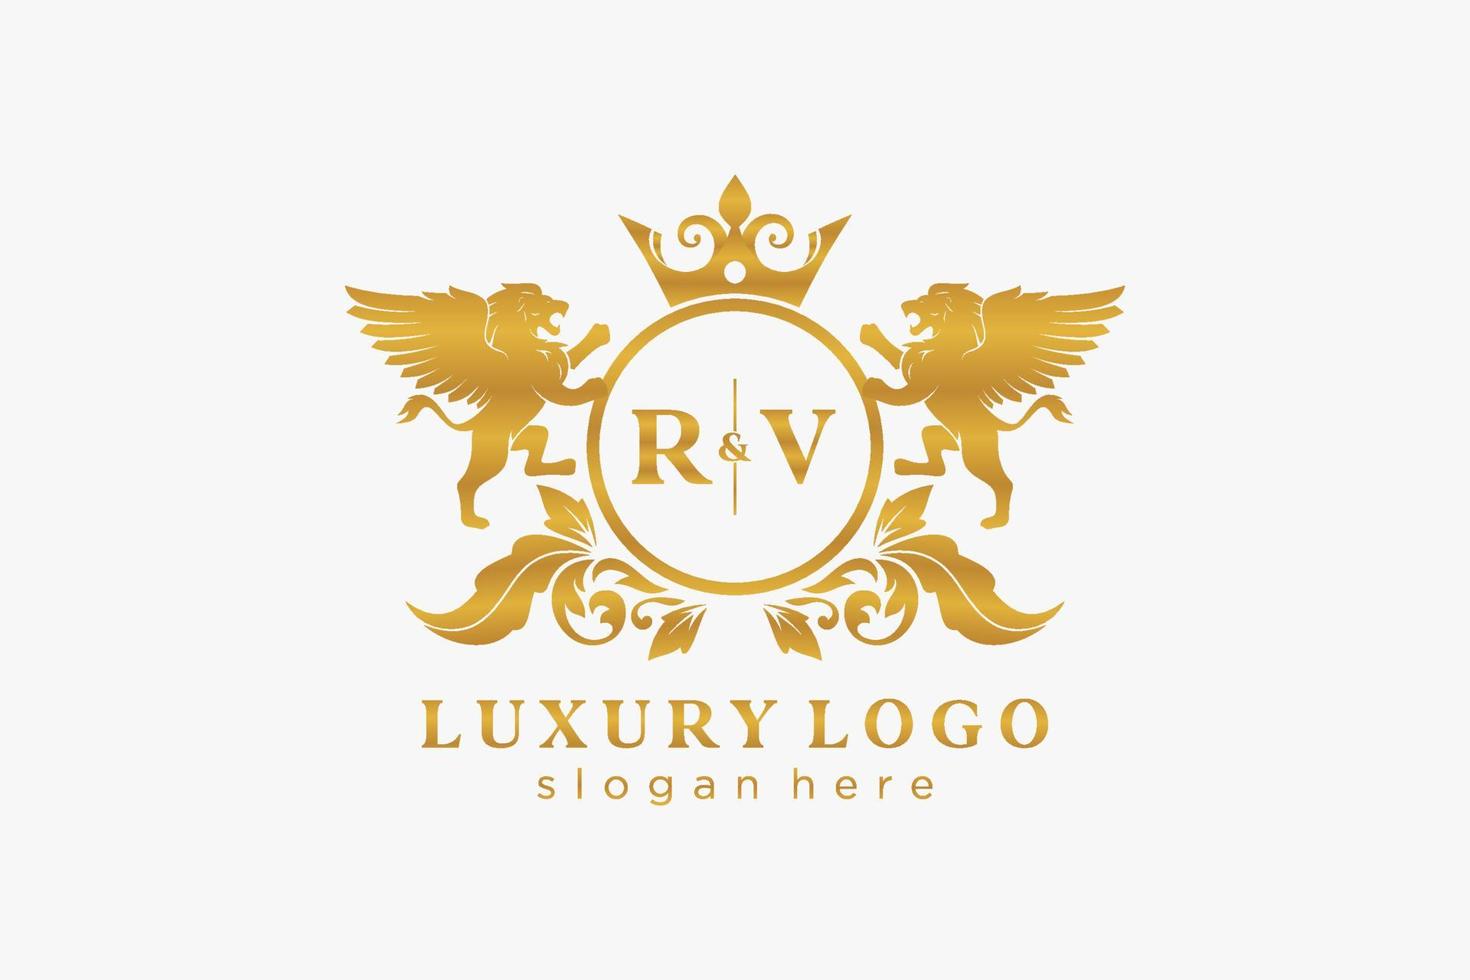 eerste rv brief leeuw Koninklijk luxe logo sjabloon in vector kunst voor restaurant, royalty, boetiek, cafe, hotel, heraldisch, sieraden, mode en andere vector illustratie.